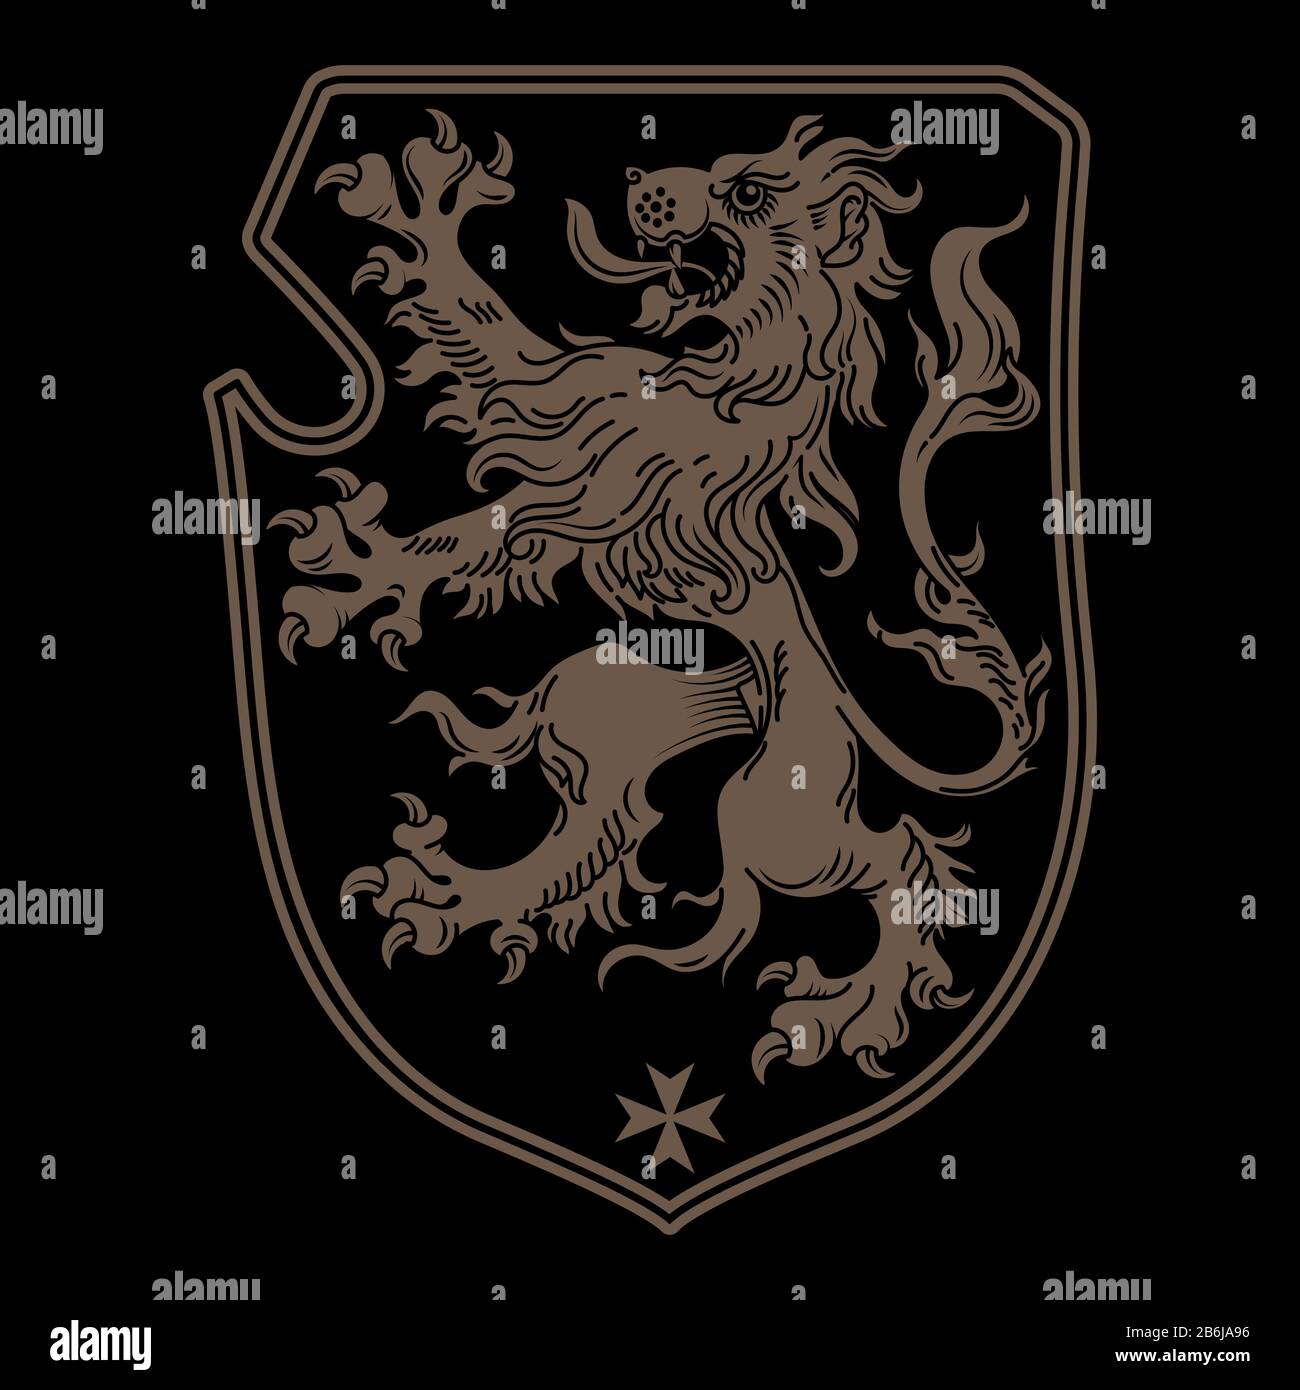 Emblema real heráldico de caballero vintage. Un escudo heráldico medieval de armas, león heráldico, diseño de emblema heráldico Ilustración del Vector